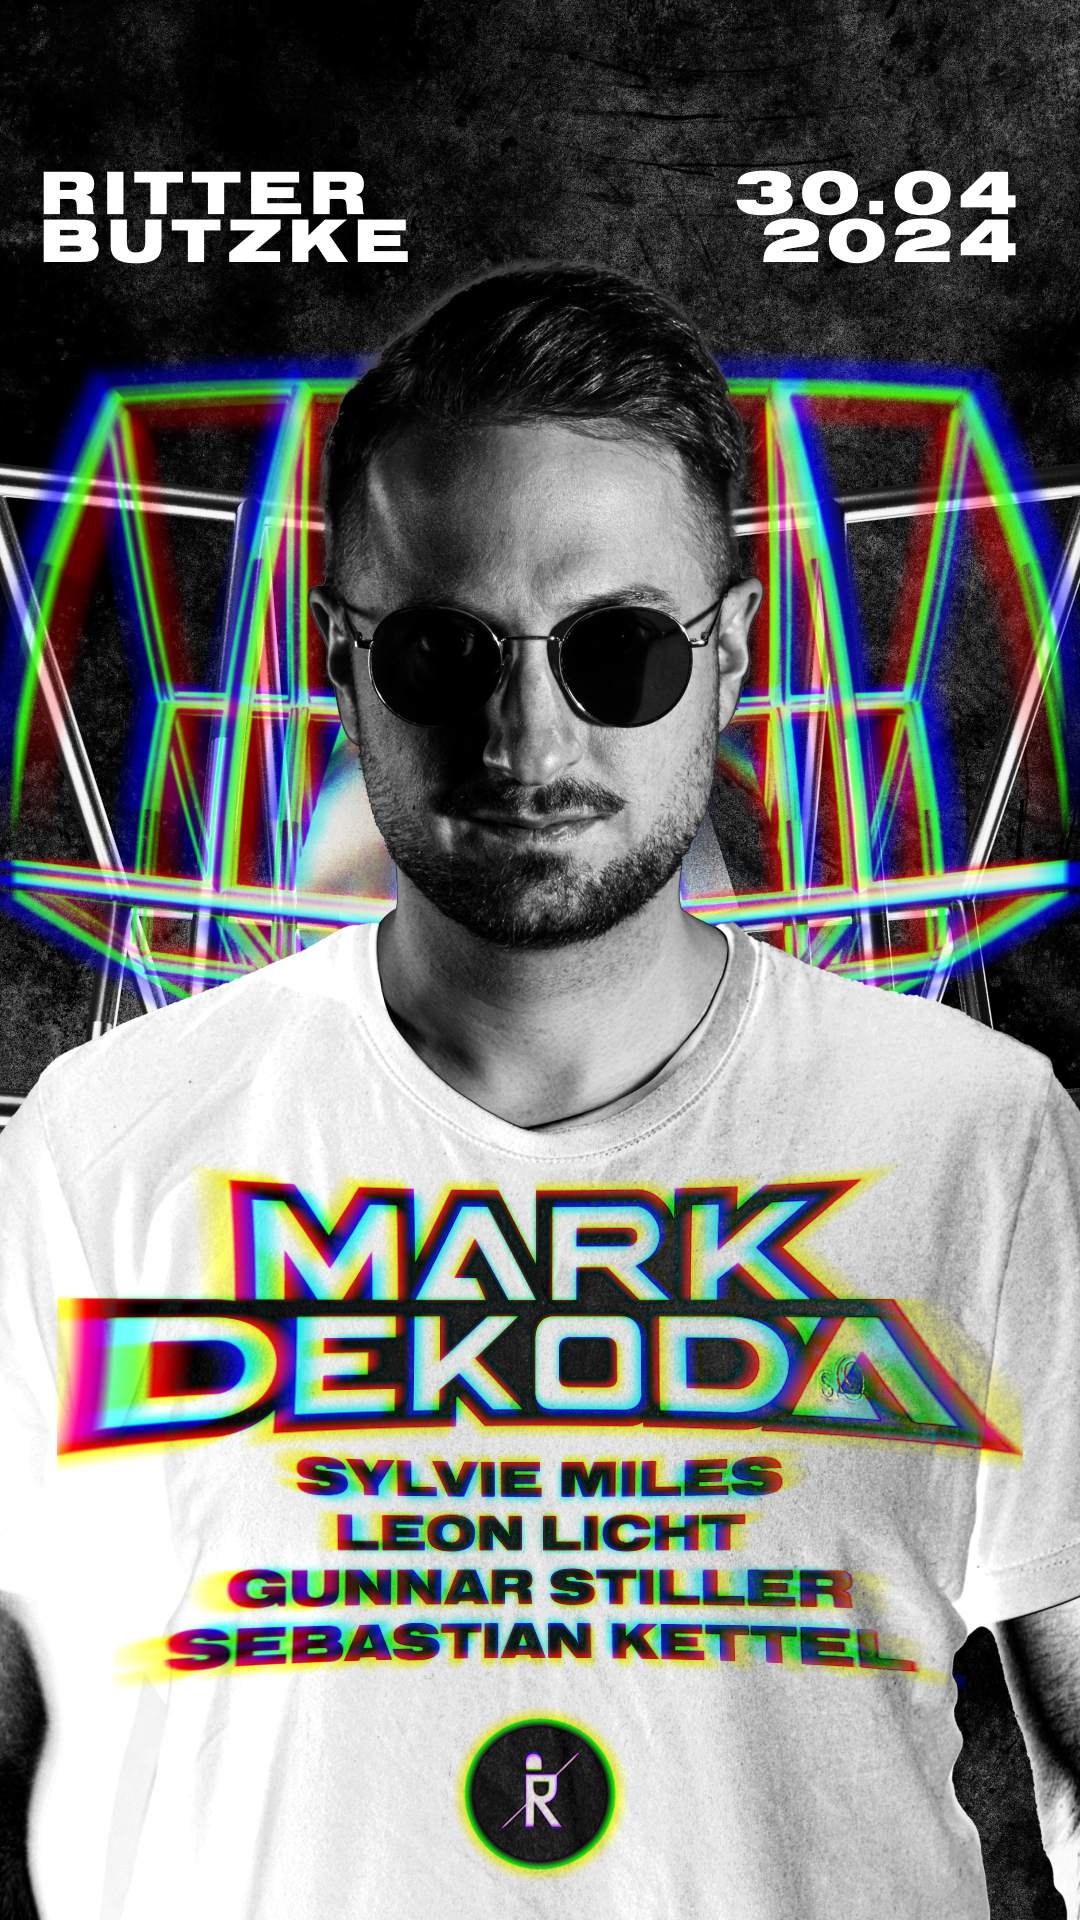 Mark Dekoda - Página trasera